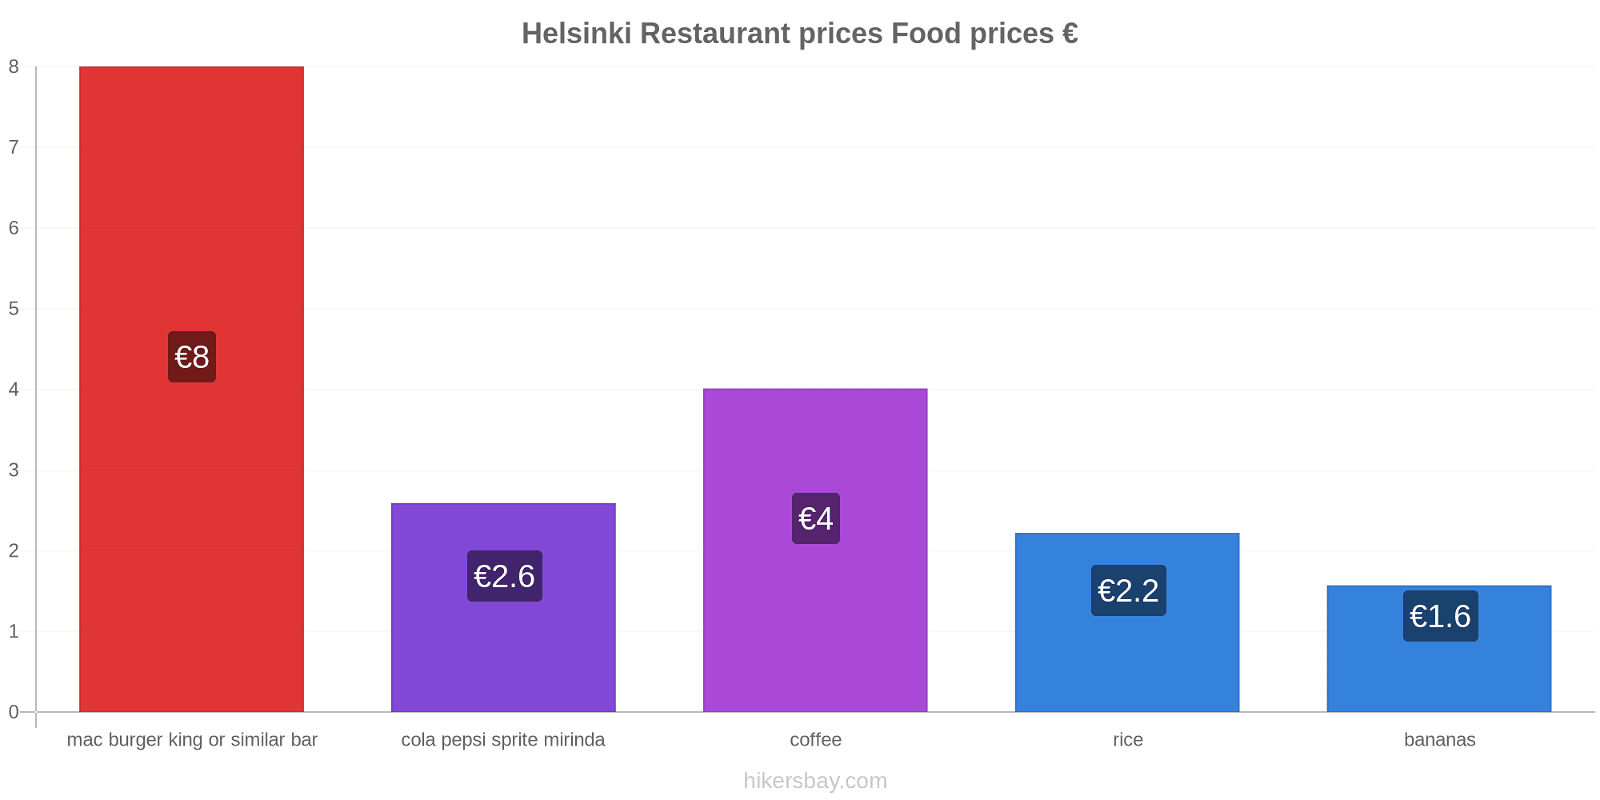 Helsinki price changes hikersbay.com